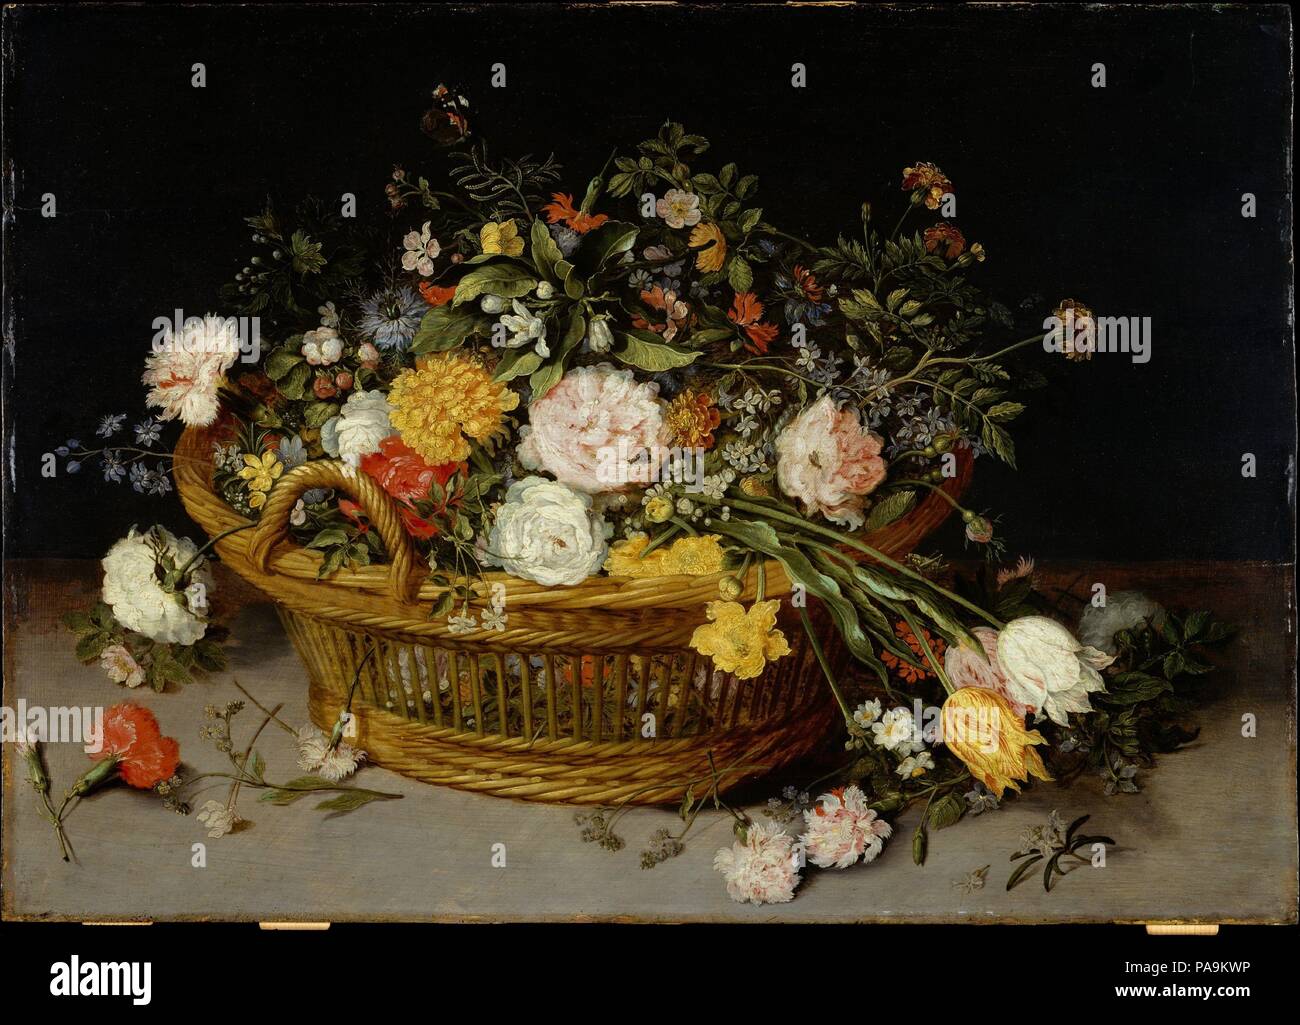 Ein Korb mit Blumen. Artist: Jan Brueghel der Jüngere (Flandern, Antwerpen Antwerpen 1601-1678). Abmessungen: 18 1/2 x 26 7/8 in. (47 x 68,3 cm). Datum: Vermutlich 1620 s. Der Künstler nahm über Studio seines berühmten Vaters im Jahr 1625, als Jan der Ältere starb unerwartet. Die Zusammensetzung ist hier entlehnt aus etwas mehr ausgefeilte Arrangements von Jan ICH; die Ausführung würdigt ihn, ohne die Erreichung der gleichen Raffinesse. Verschiedene Insekten und gefallenen Blumen unterstützen eine konventionelle vanitas Thema, das von der Schmetterling ist erleichtert, ein Symbol für die Seele und die Auferstehung. Museum: Metropolitan Muse Stockfoto